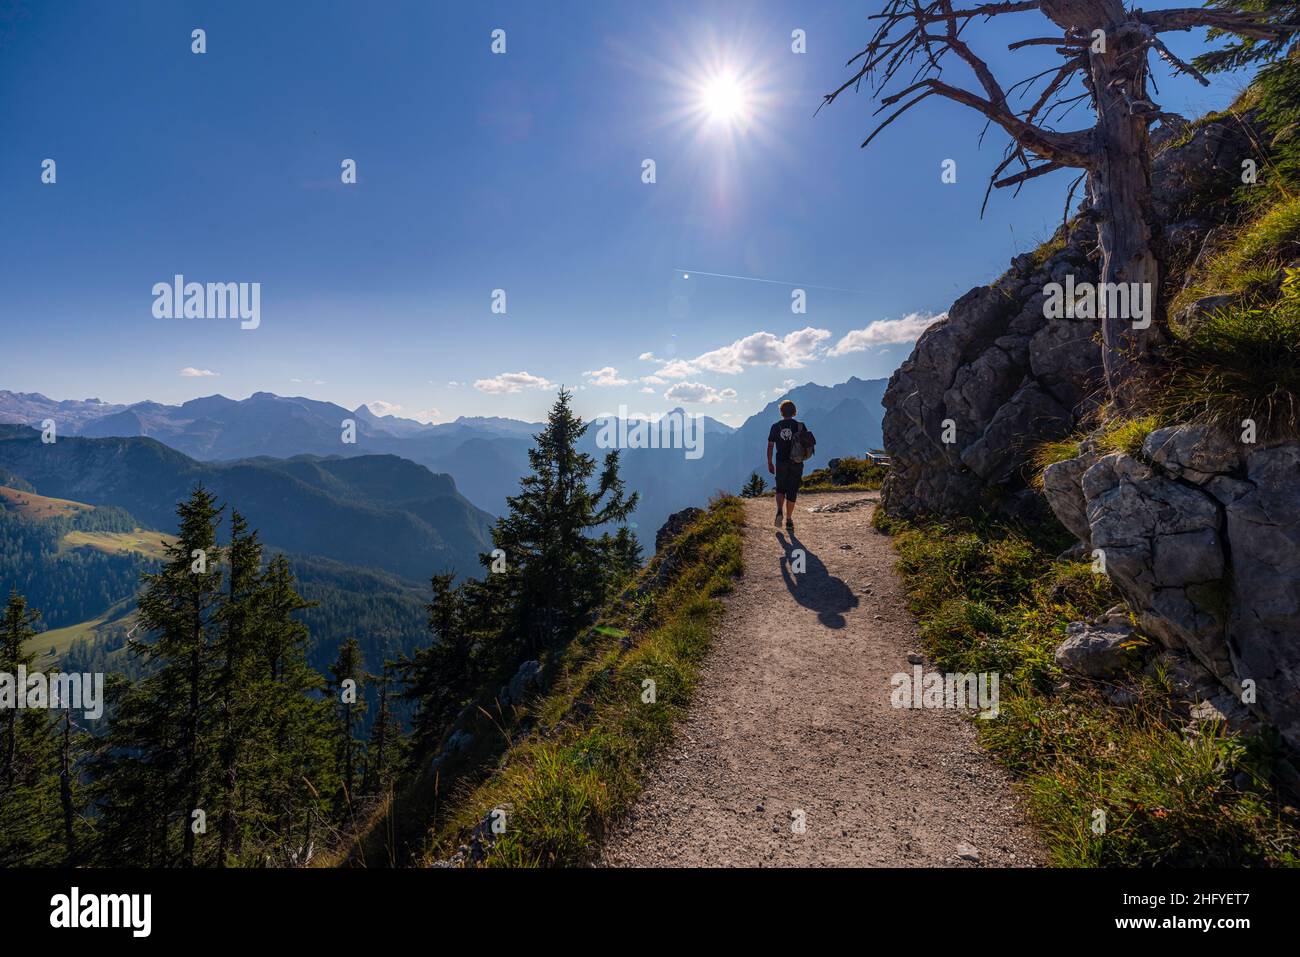 Alpen, Berchtesgadener Land im Sommer bei blauem Himmel und schöner Sicht Foto Stock